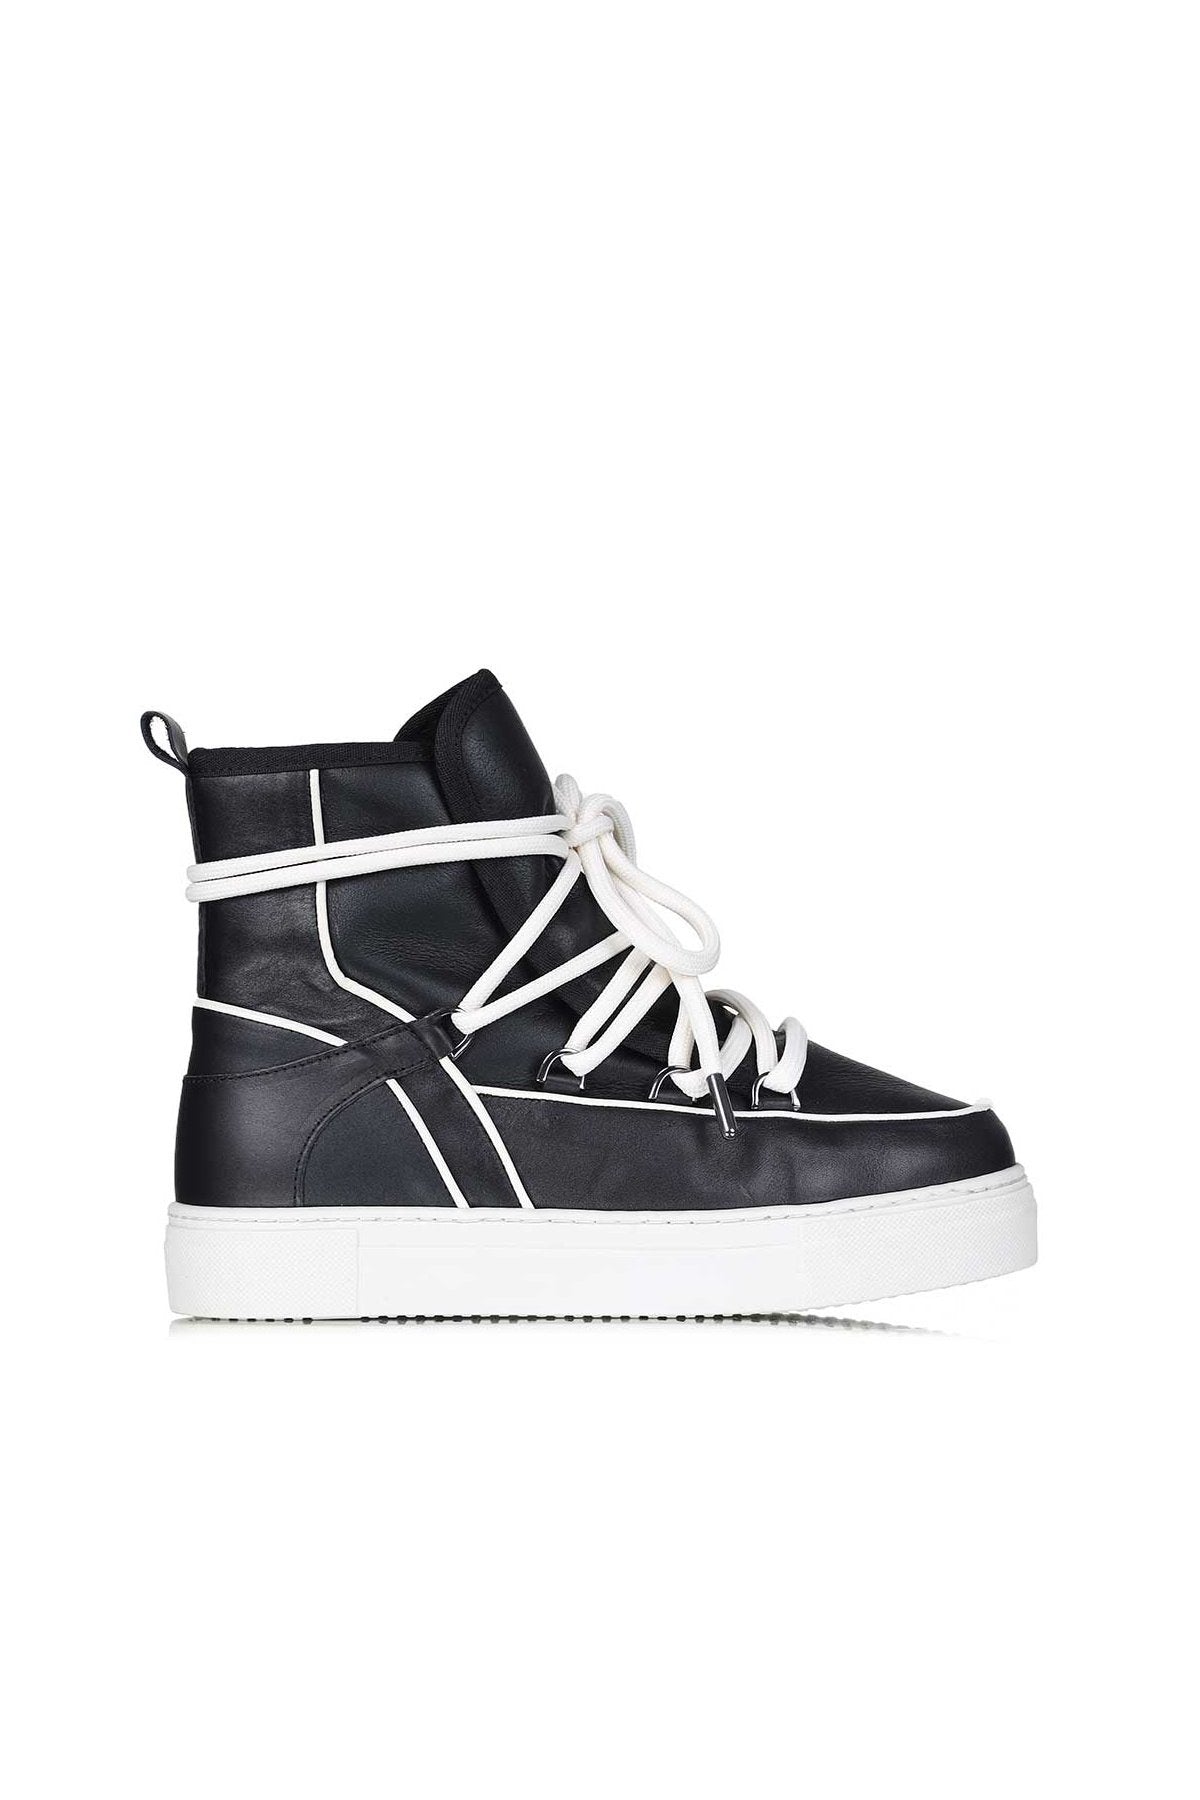 Mouton Sneaker Napa - Black/White Trim